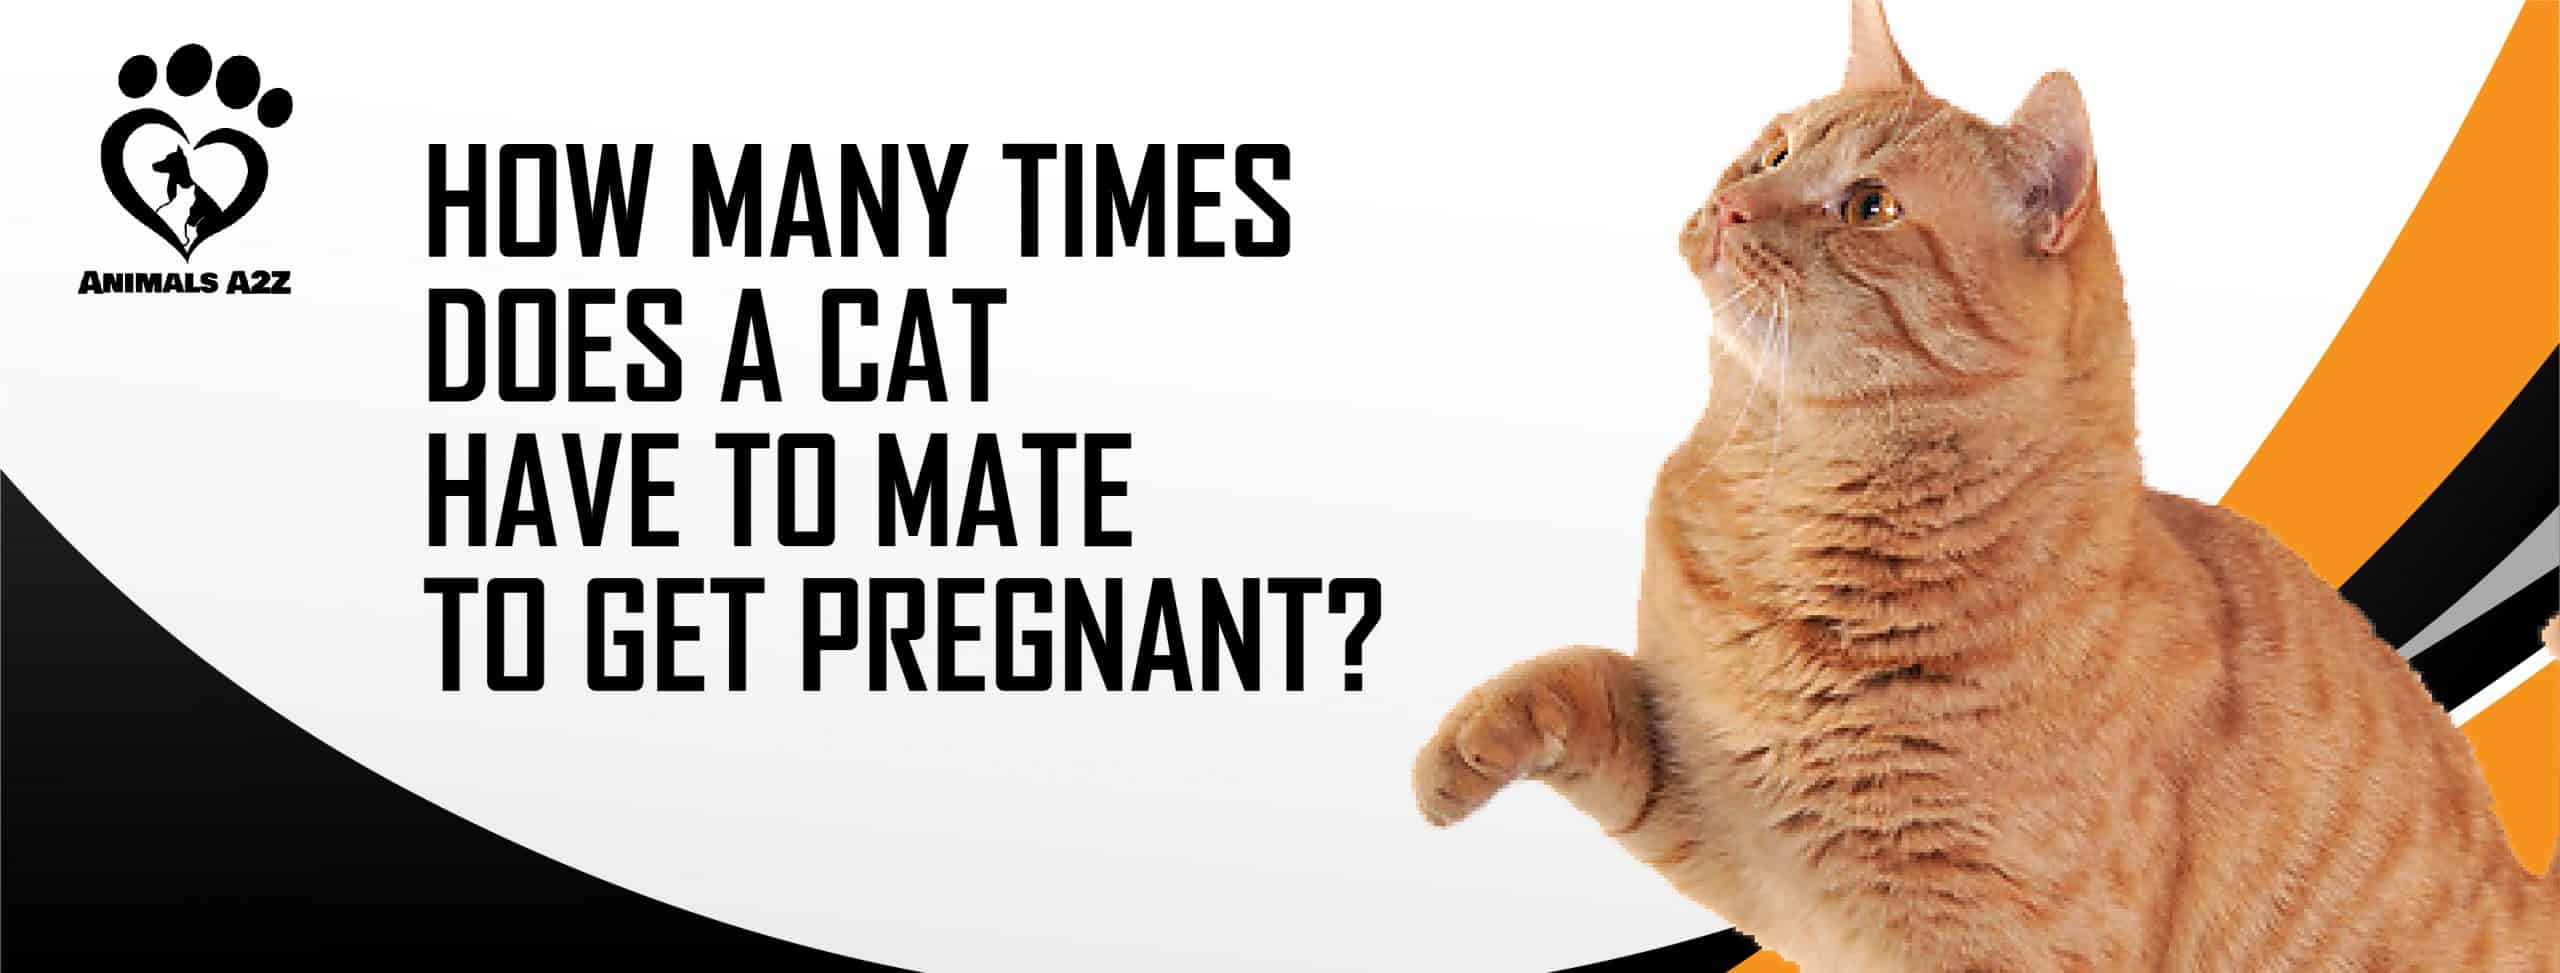 træfning favor svinge Hvor mange gange skal en kat parre sig for at blive gravid? [ Grundigt svar  ]